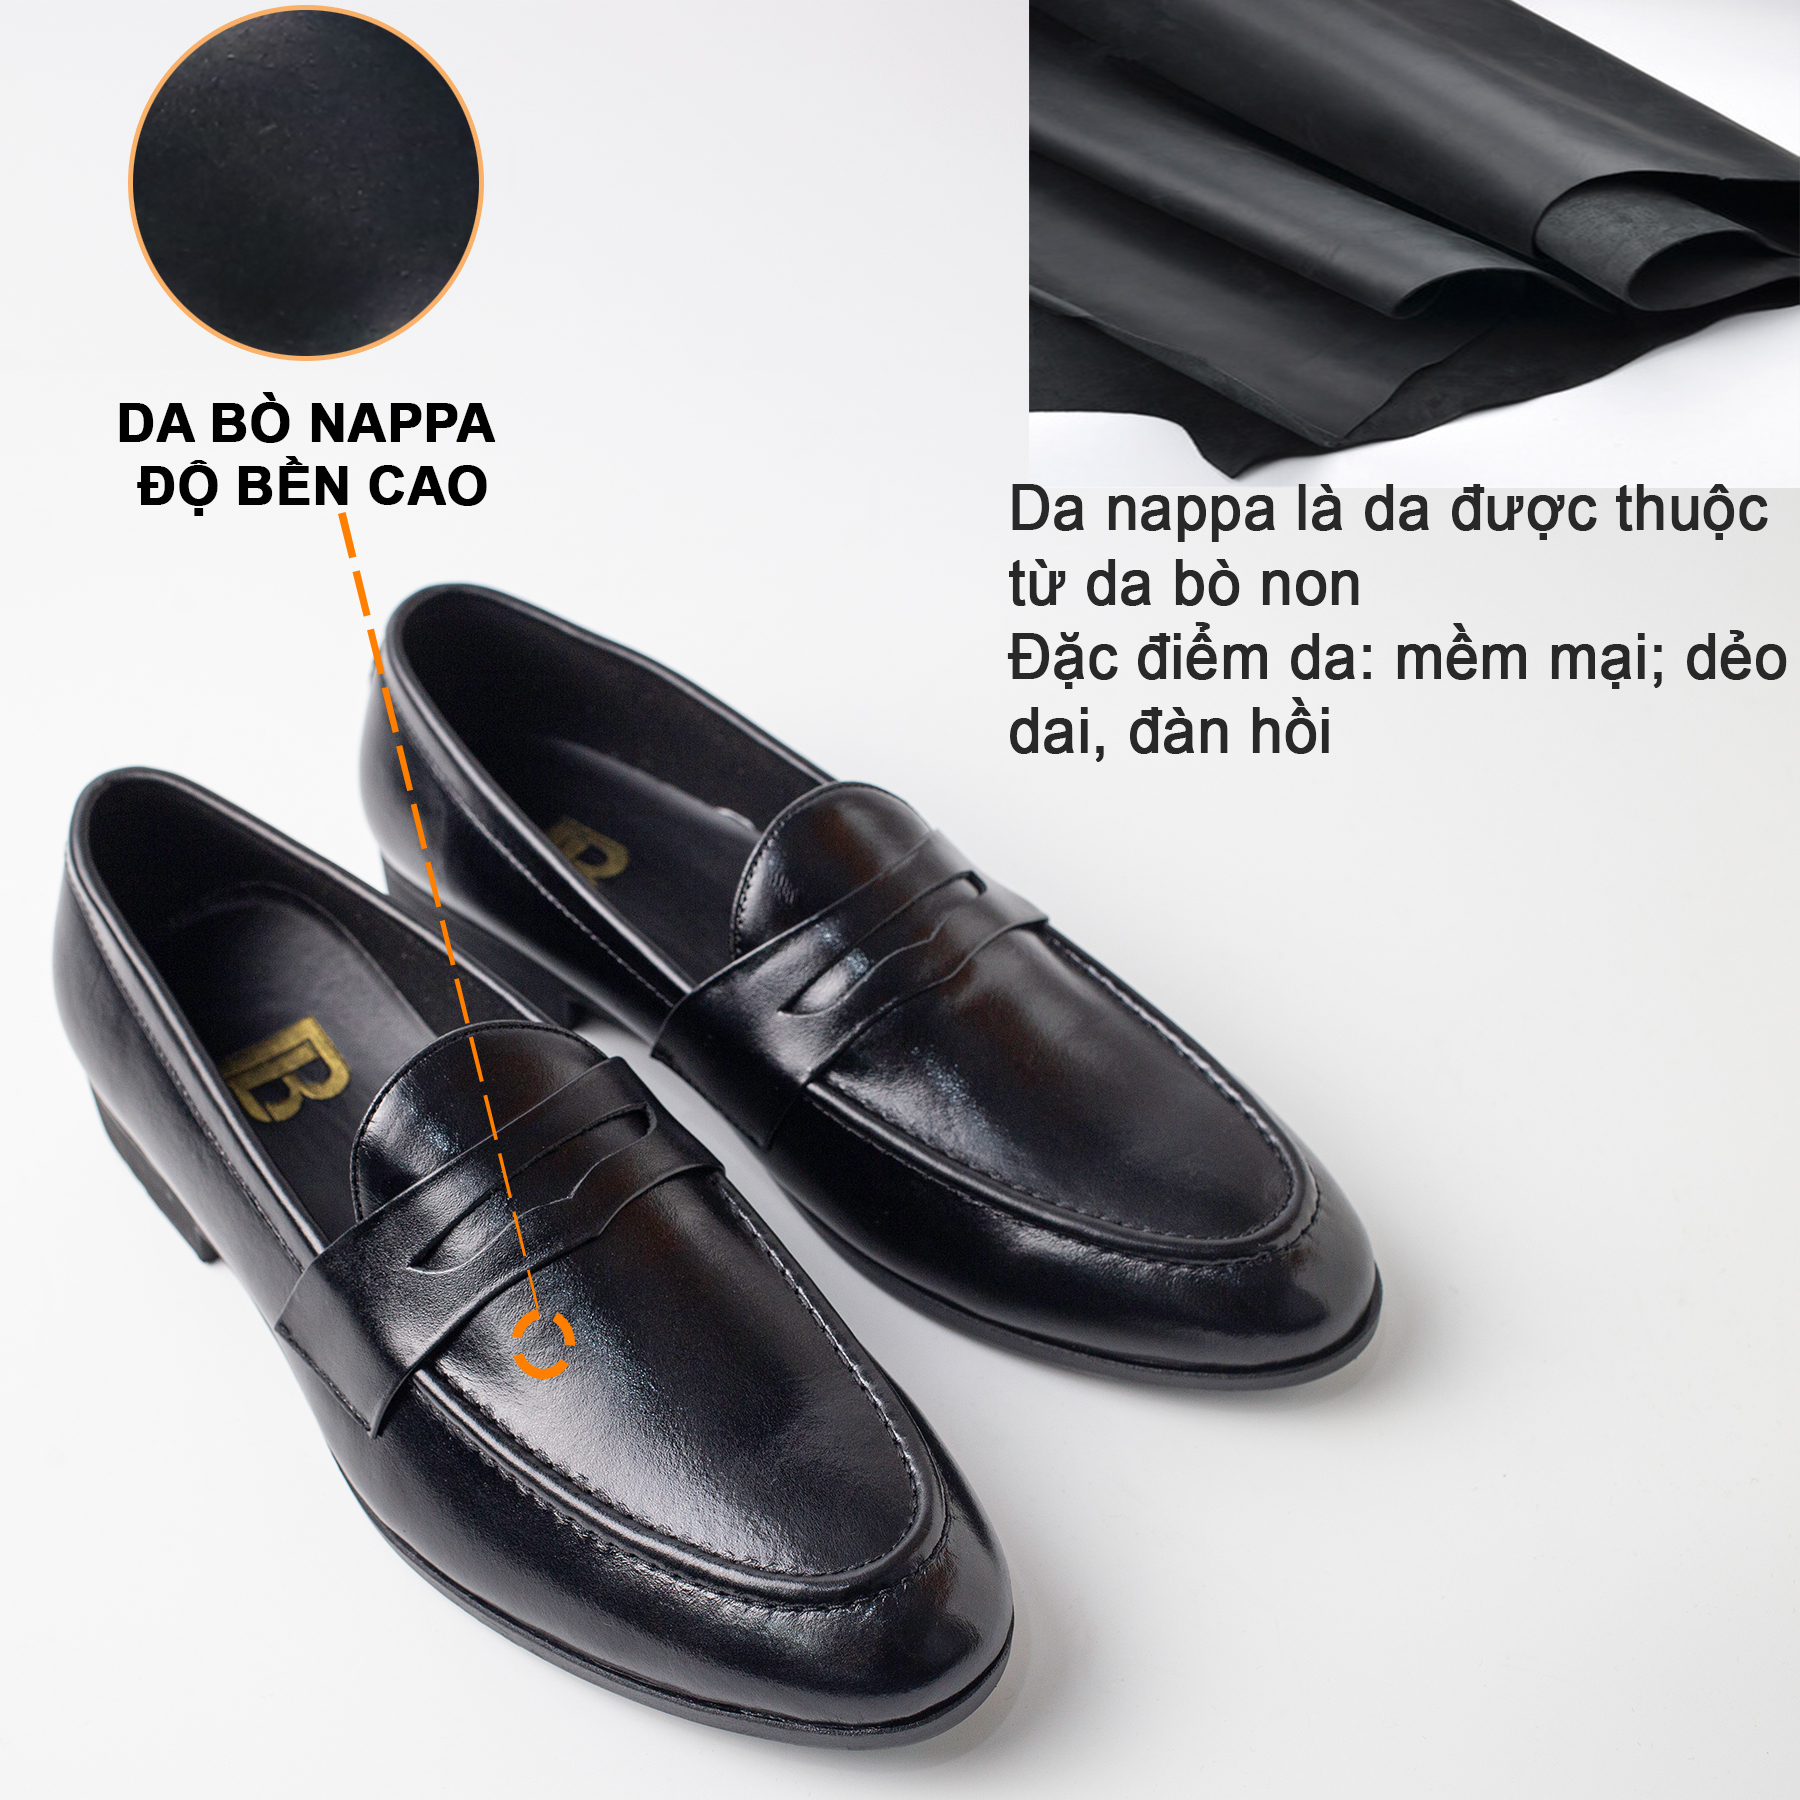 Hình ảnh Giày lười da nam công sở Bụi Leather G120 - Da bò Nappa cao cấp - Bảo hành 12 tháng